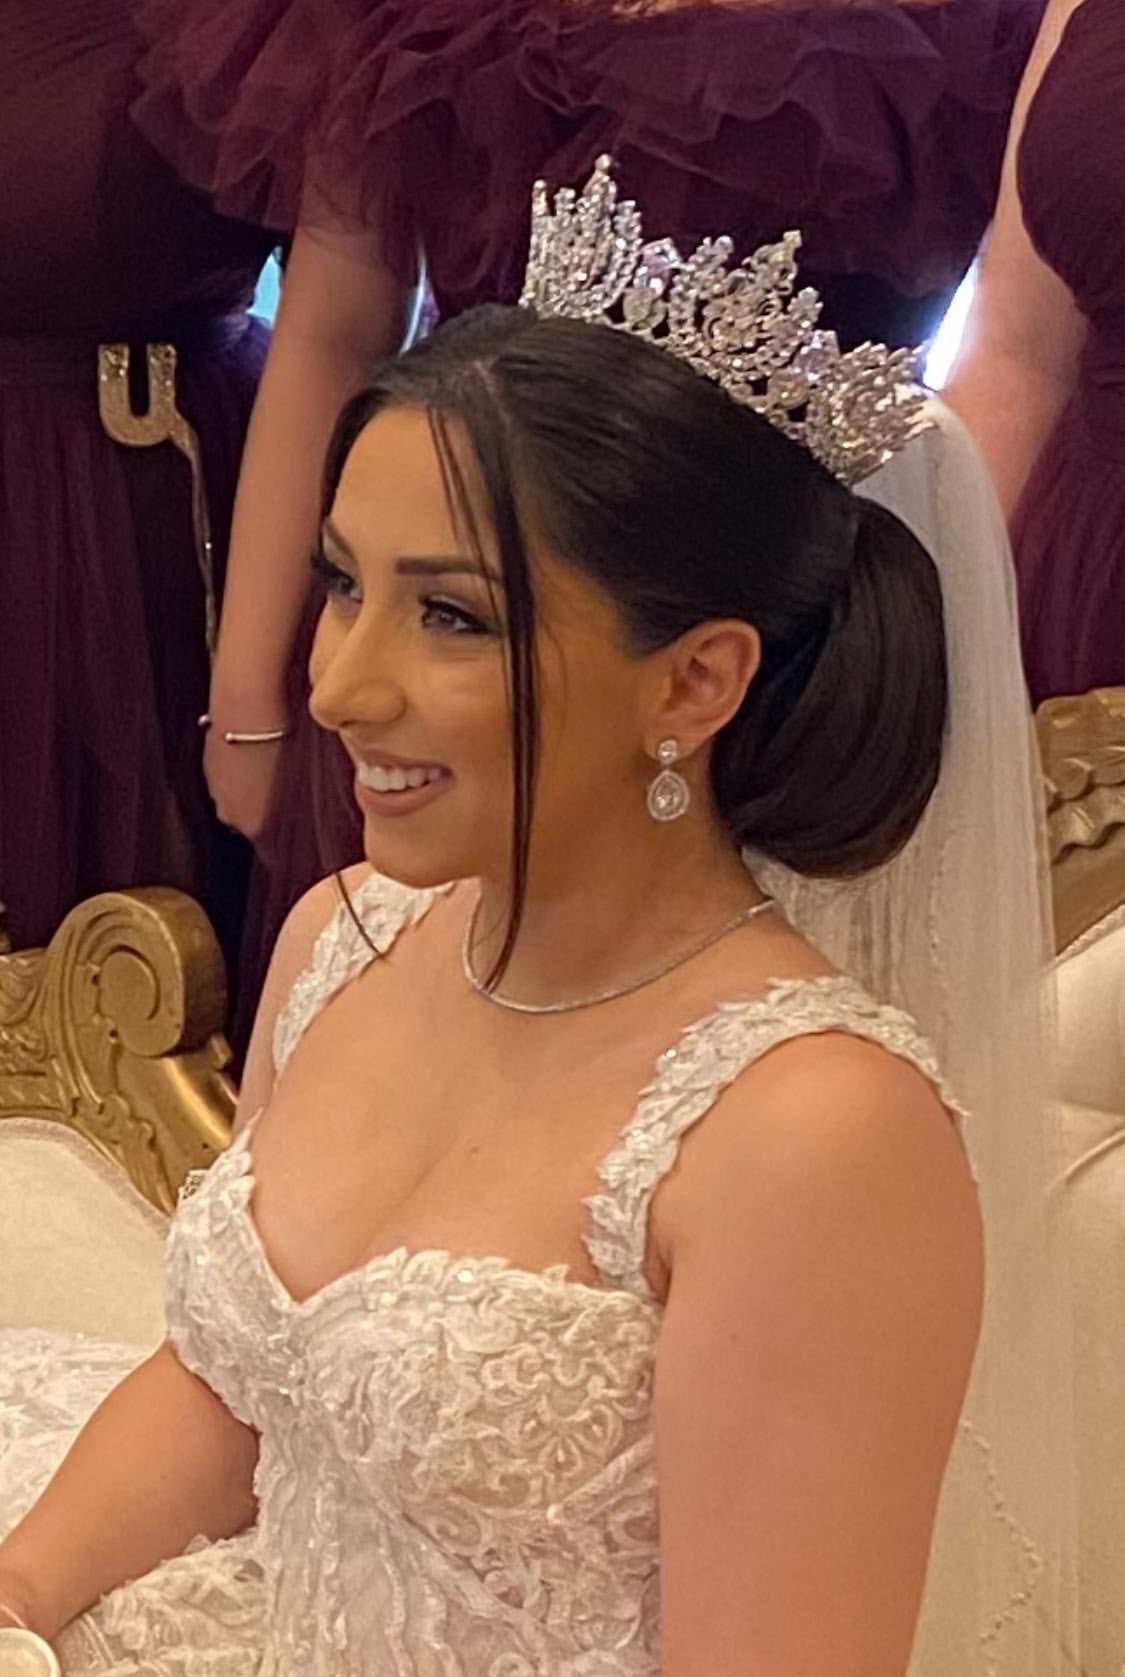 REGINA Swarovski Bridal Full Crown - SAMPLE SALE